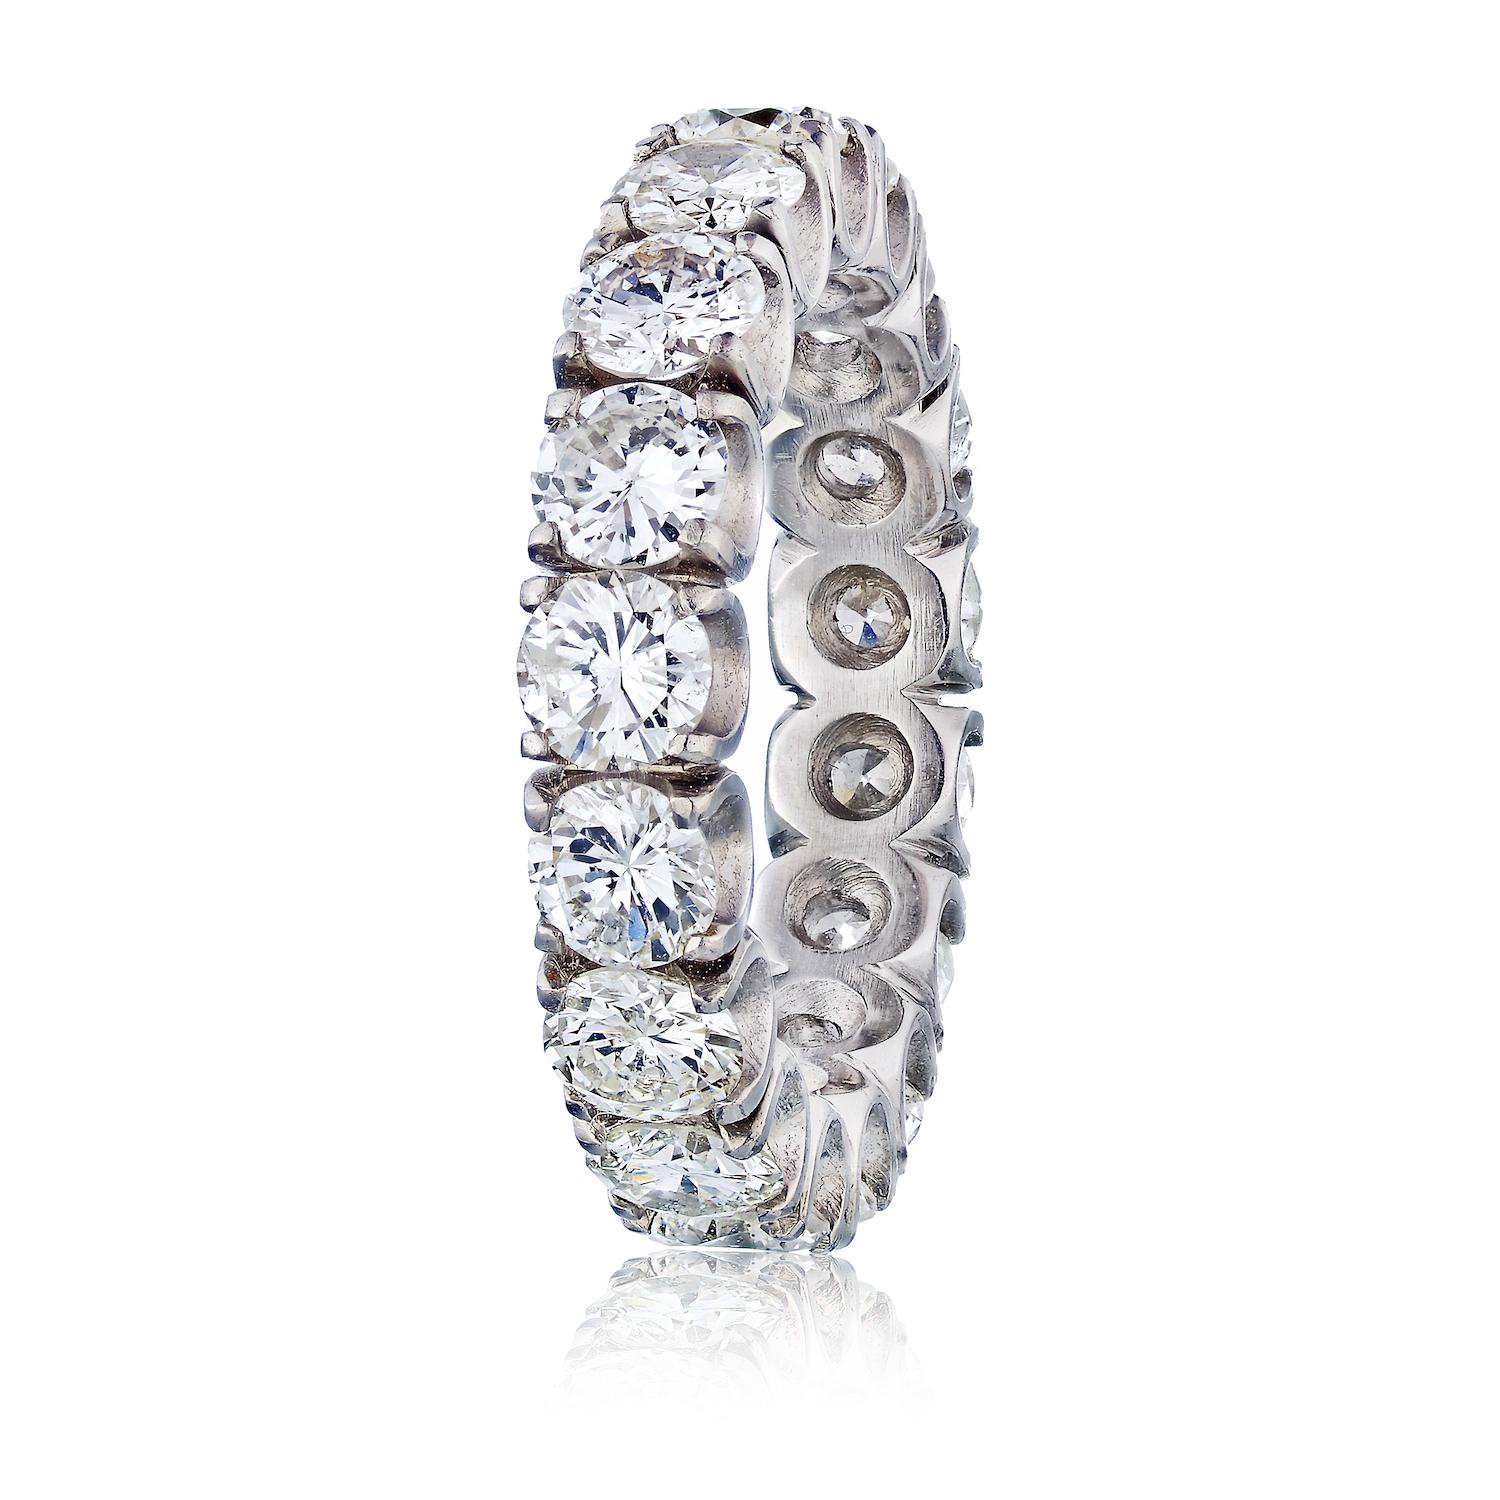 Dieser schöne Ring ist aus Platin gefertigt und mit runden Diamanten im Brillantschliff mit einem Gesamtgewicht von 5,00cts besetzt. Die Diamanten sind rundherum in einer sicheren U-förmigen Fassung gefasst. Dieser Ring hat eine Breite von 4,5 mm